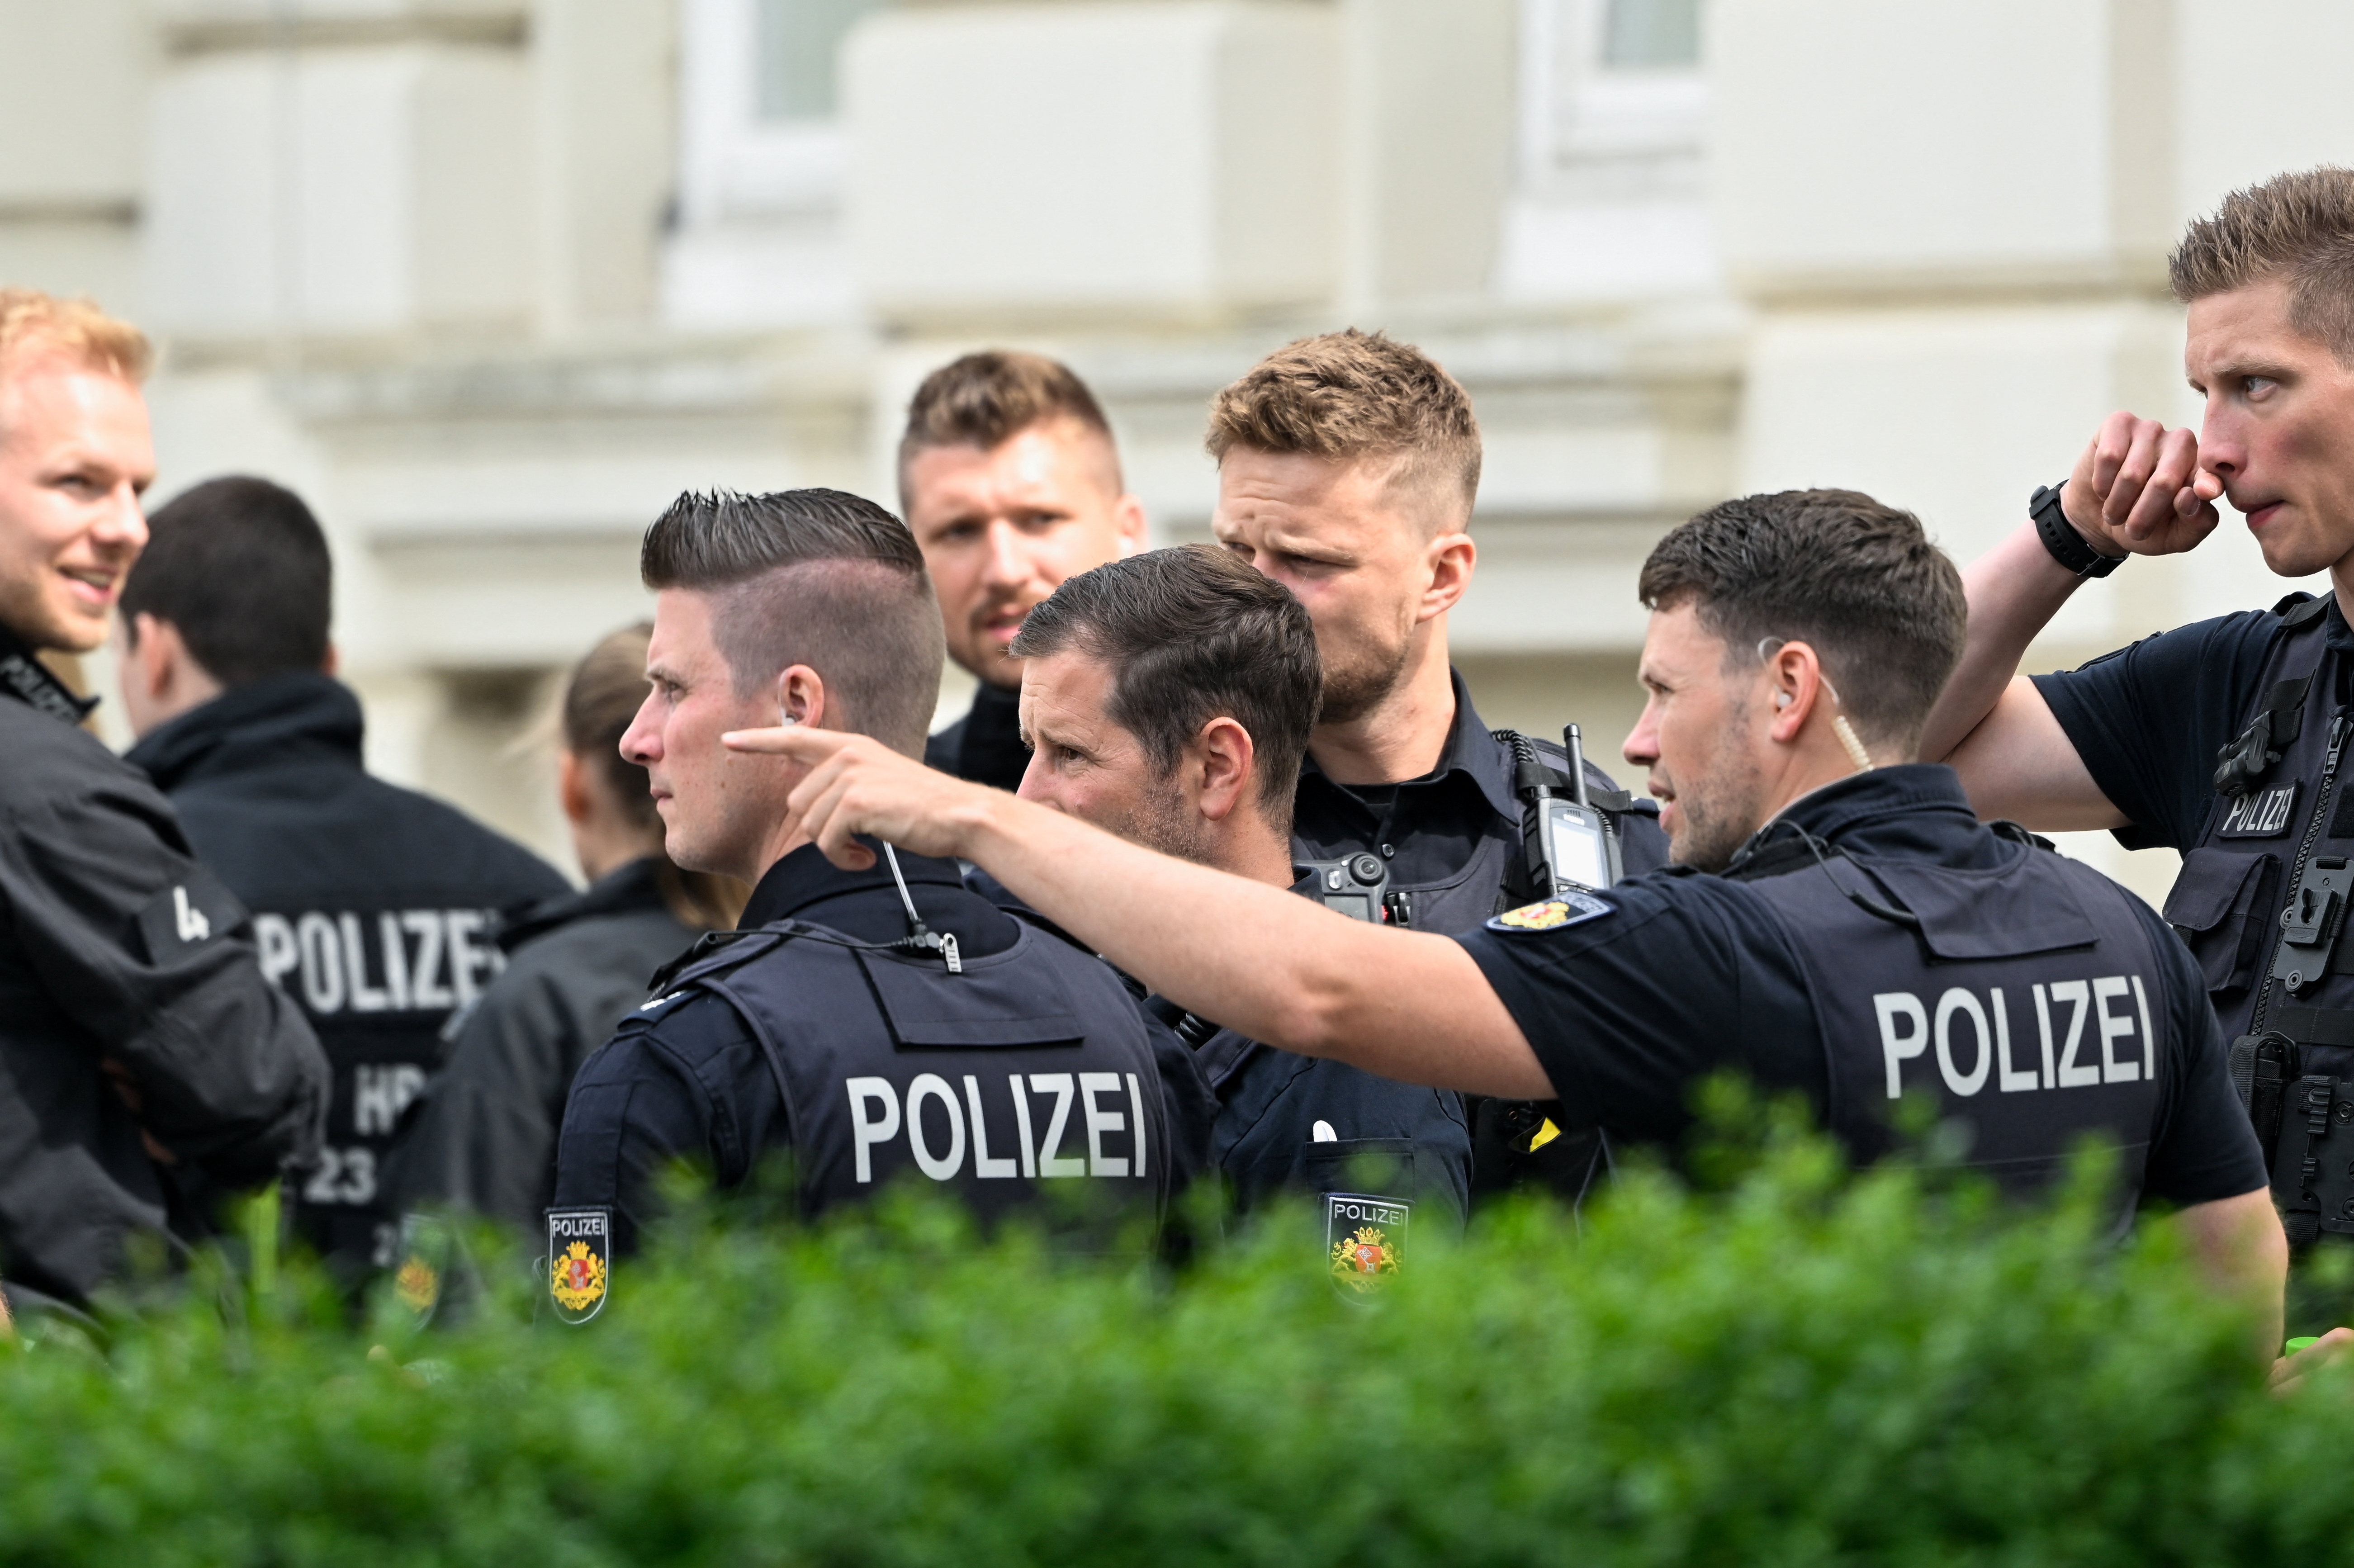 Imagen de hace una semana, cuando un hombre armado de 21 años abrió fuego en una escuela secundaria en el norte de Alemania (REUTERS/Fabian Bimmer)